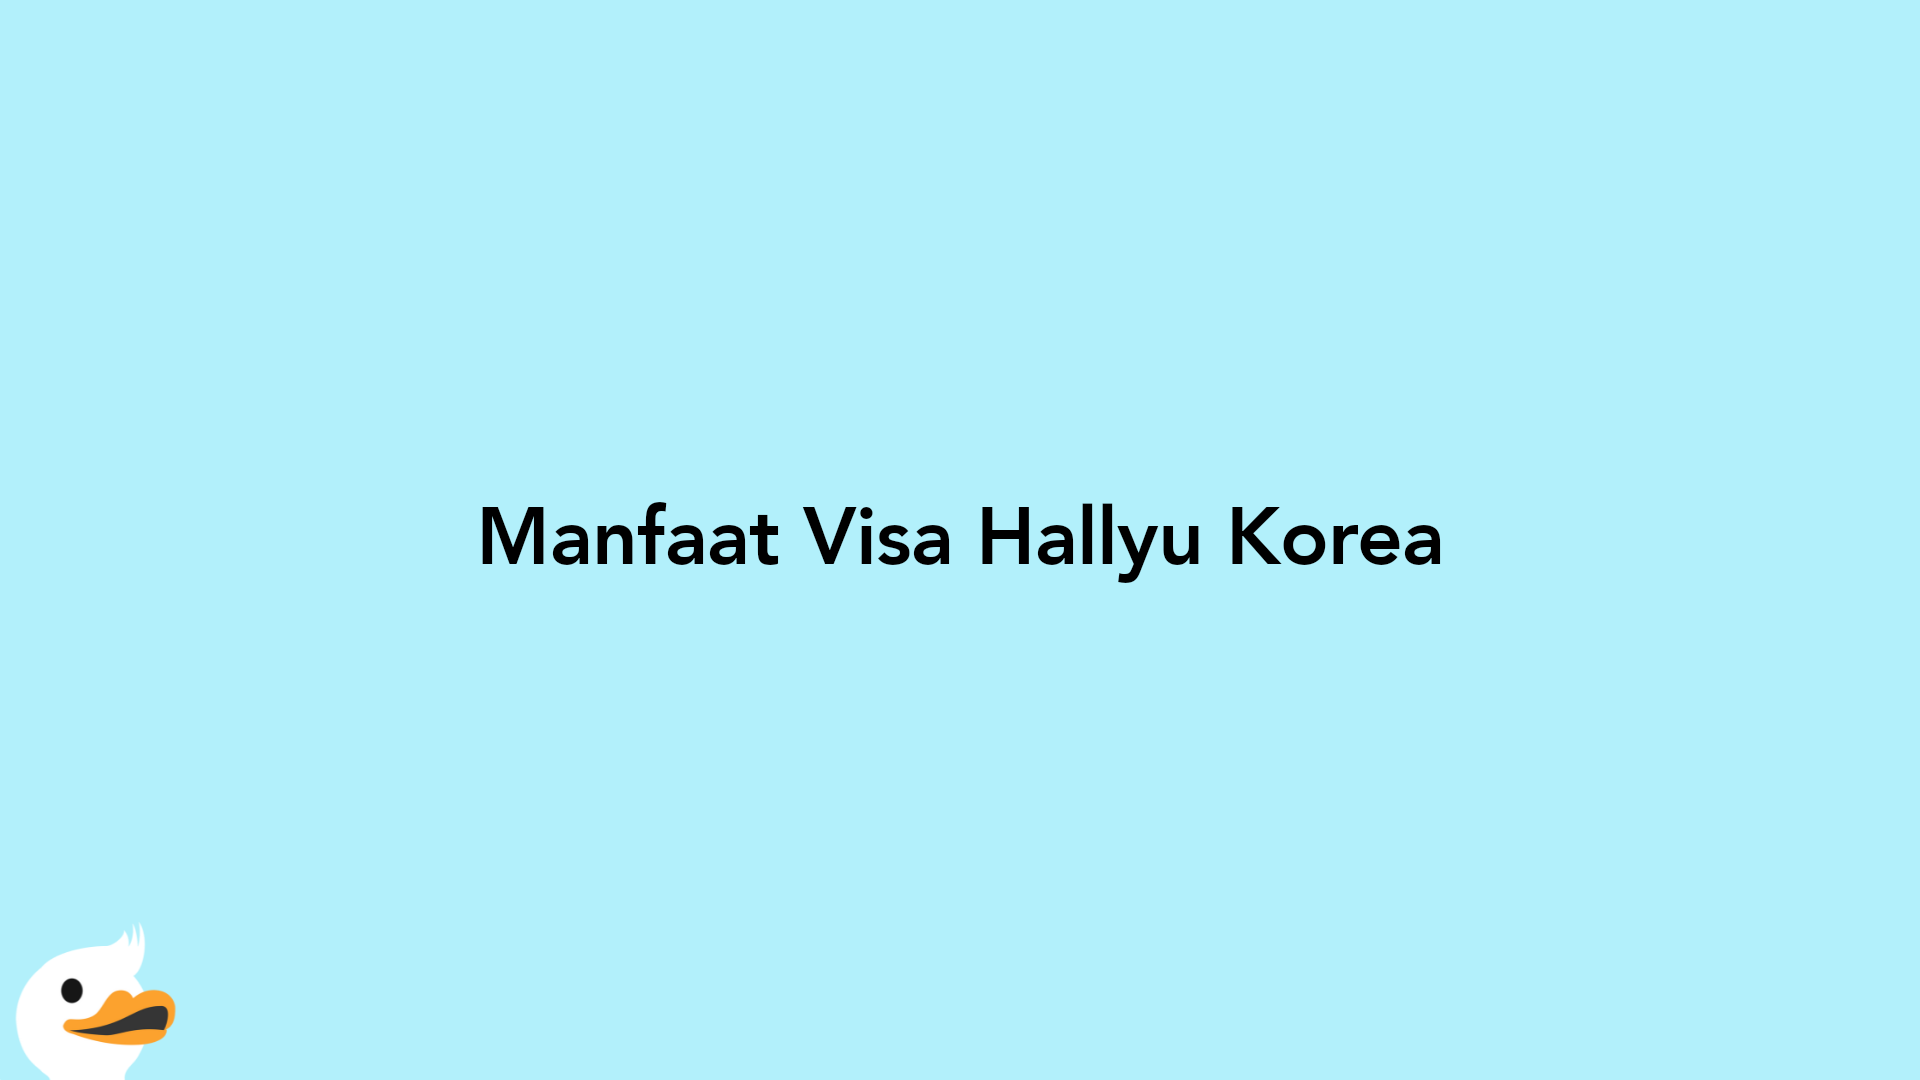 Manfaat Visa Hallyu Korea